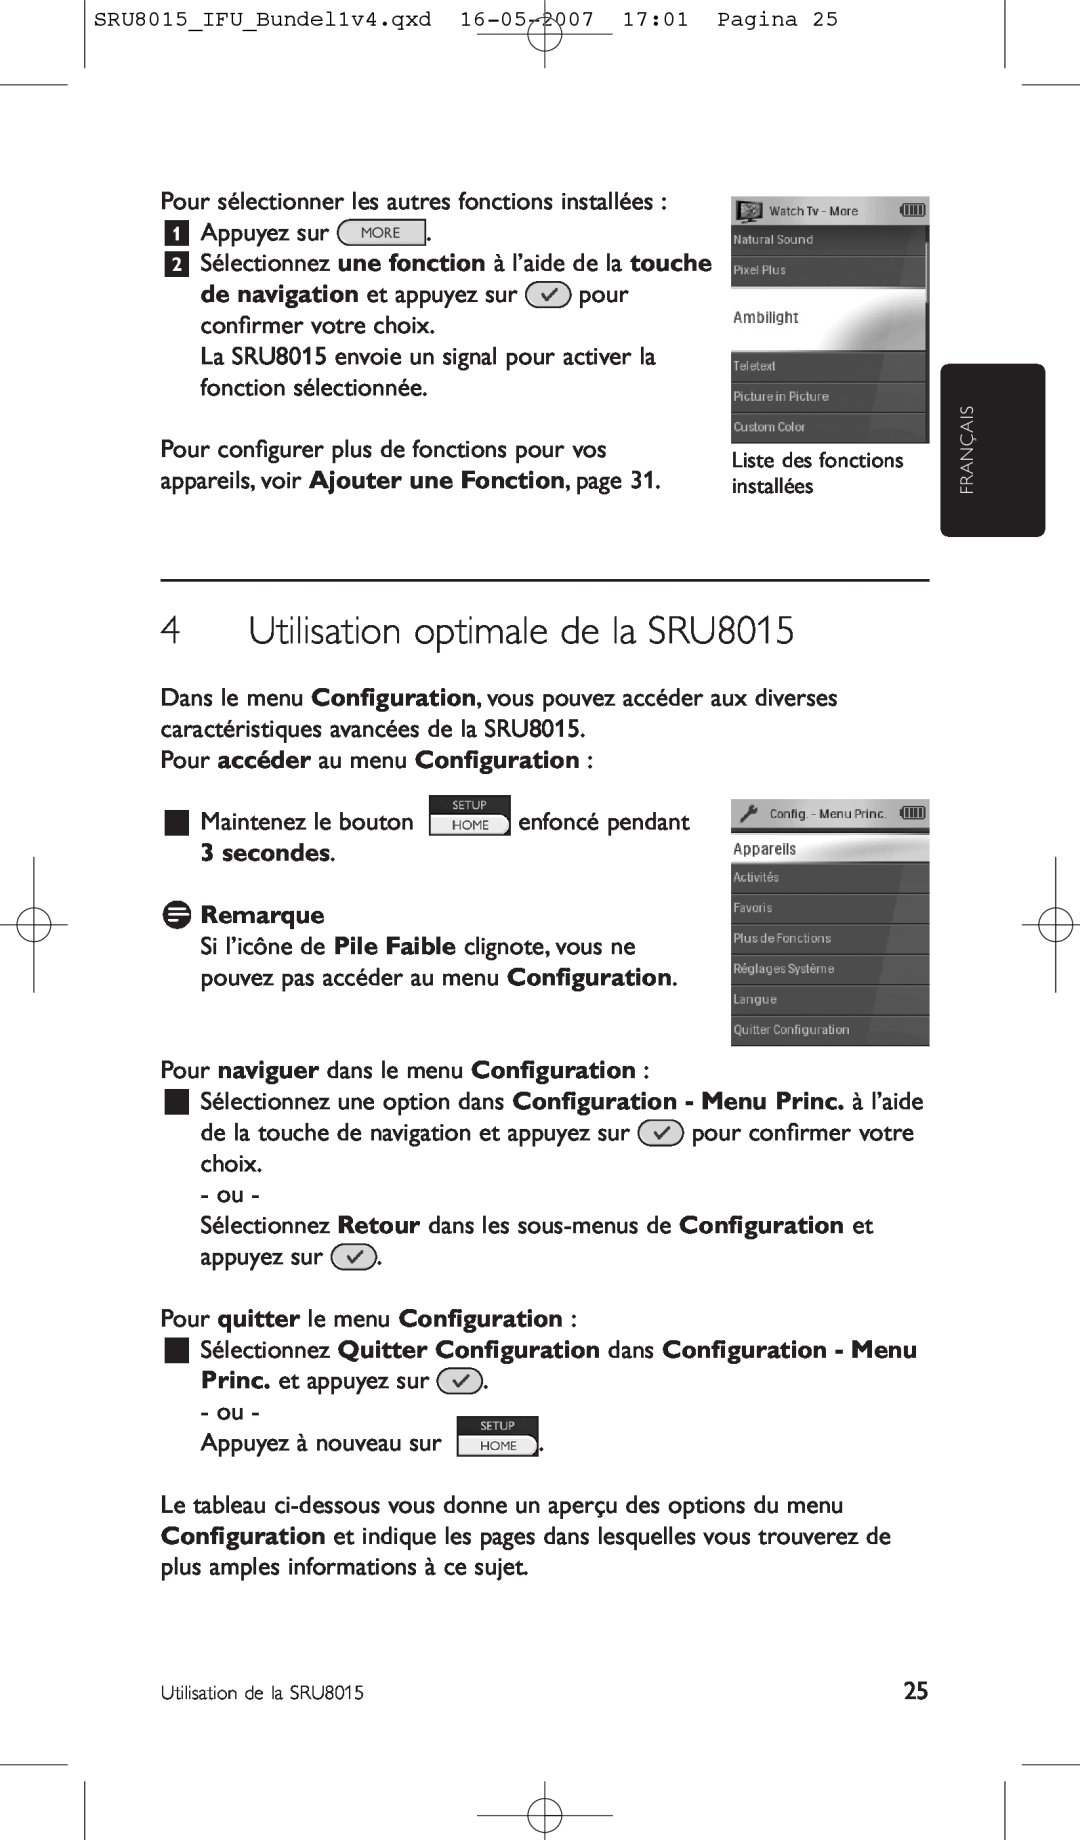 Philips manual Utilisation optimale de la SRU8015, Pour accéder au menu Conﬁguration, secondes D Remarque 